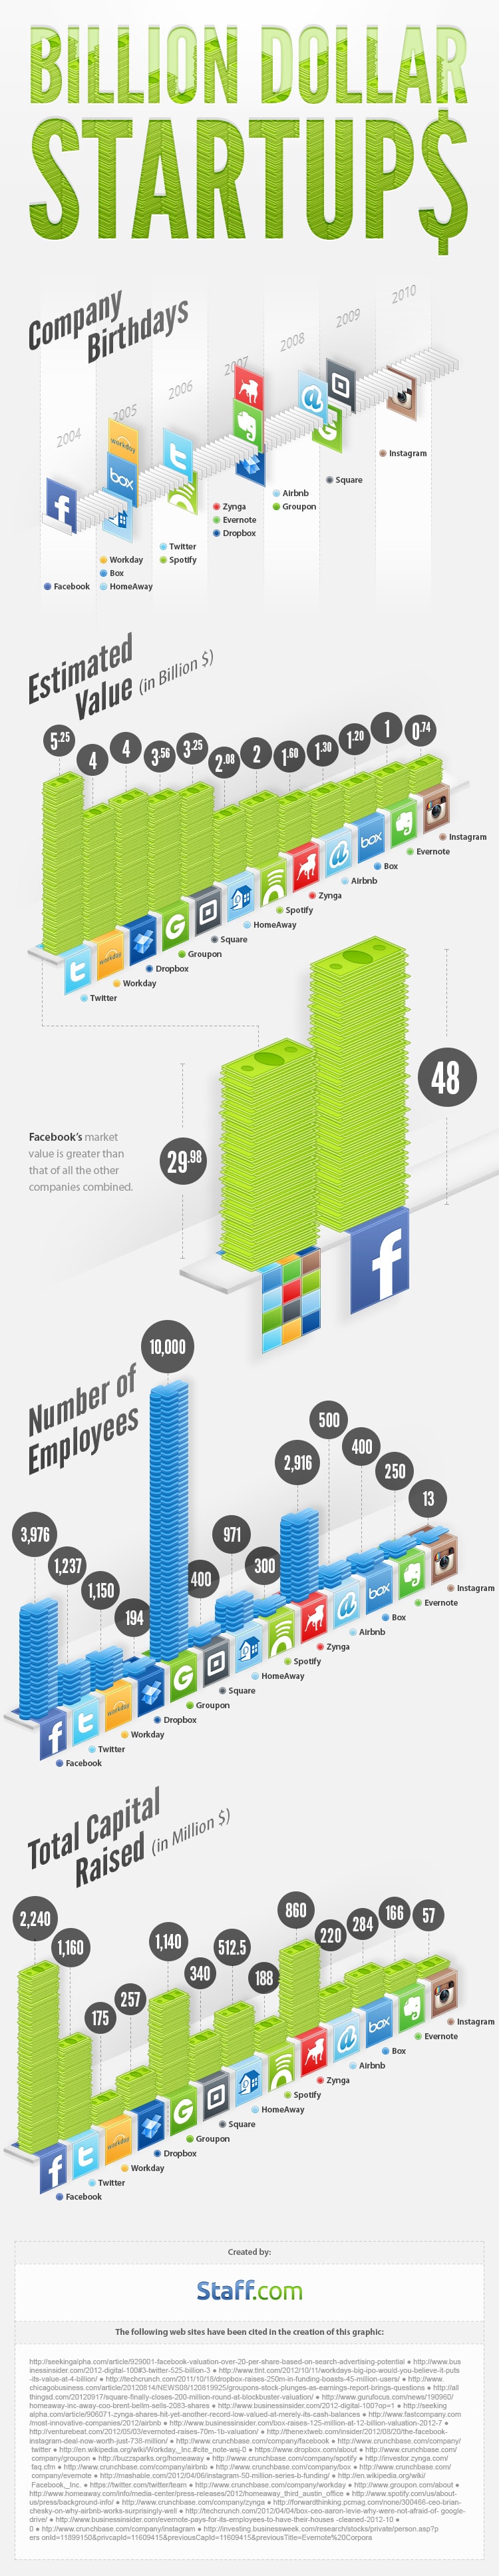 online-billion-dollar-startups-infographic